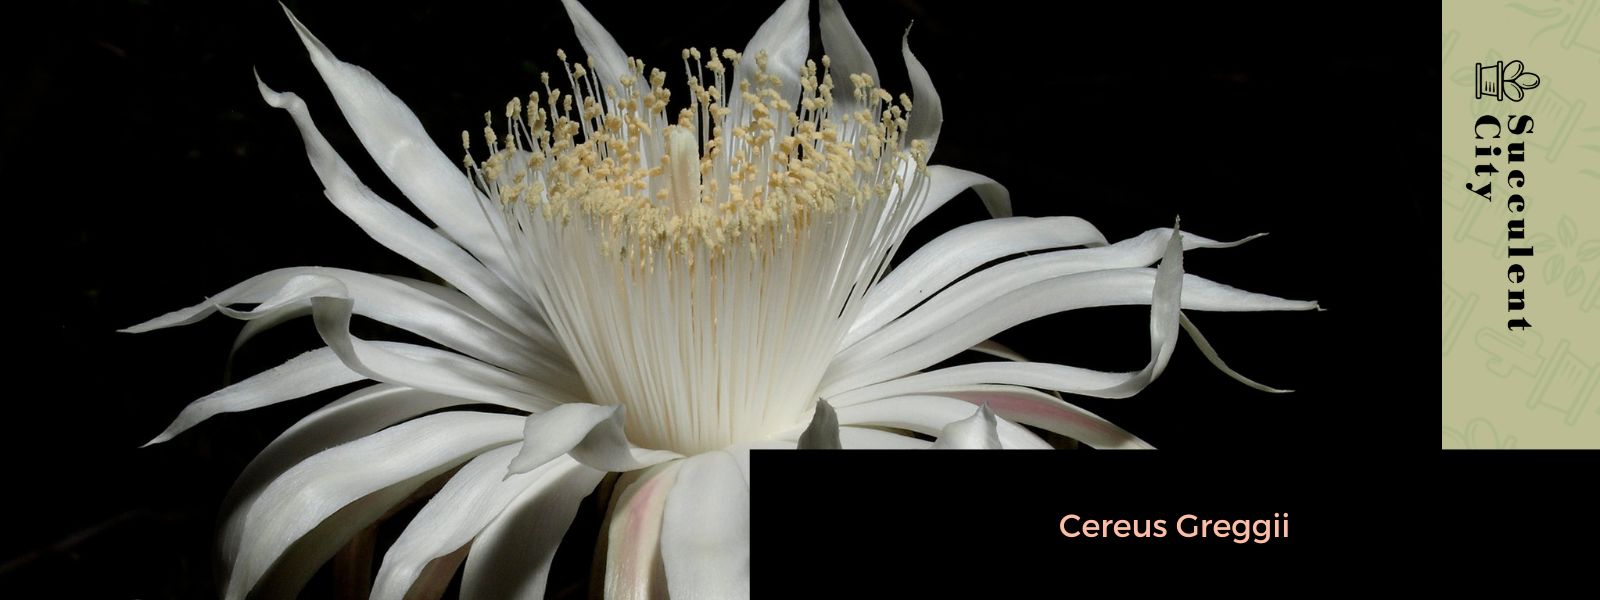 Cereus Greggii (La Reina de la Noche de Arizona)